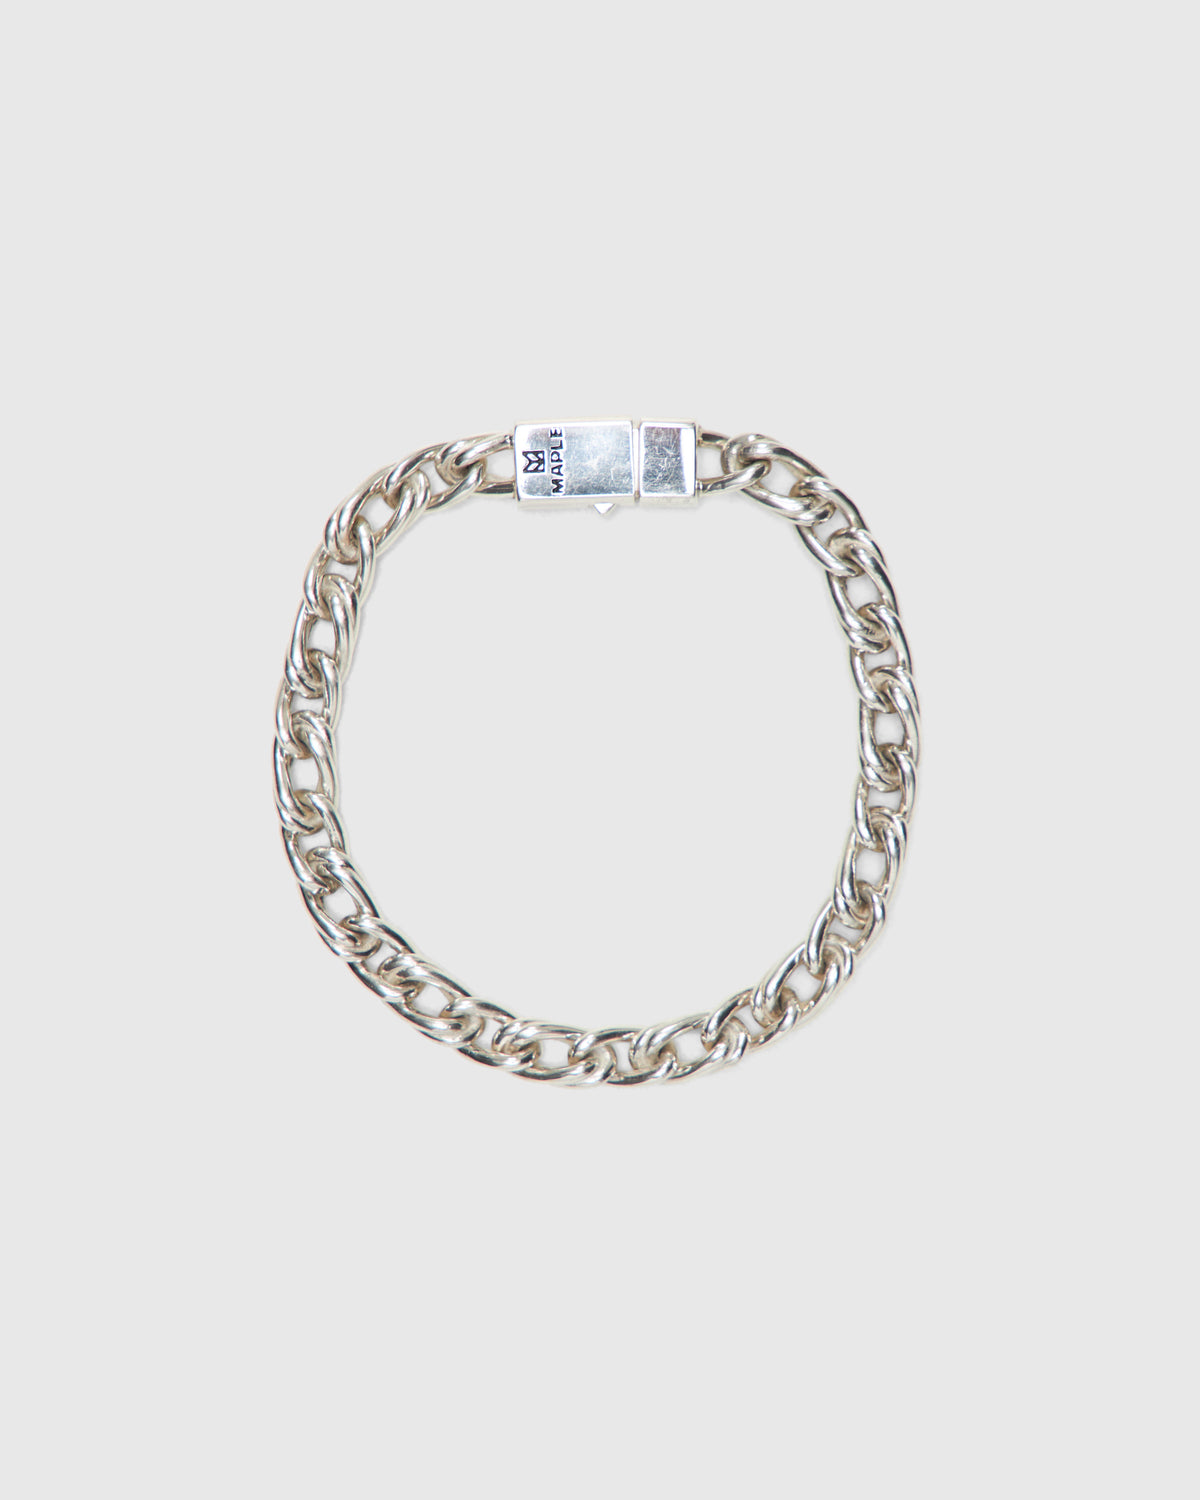 Double Link Bracelet in Silver 925